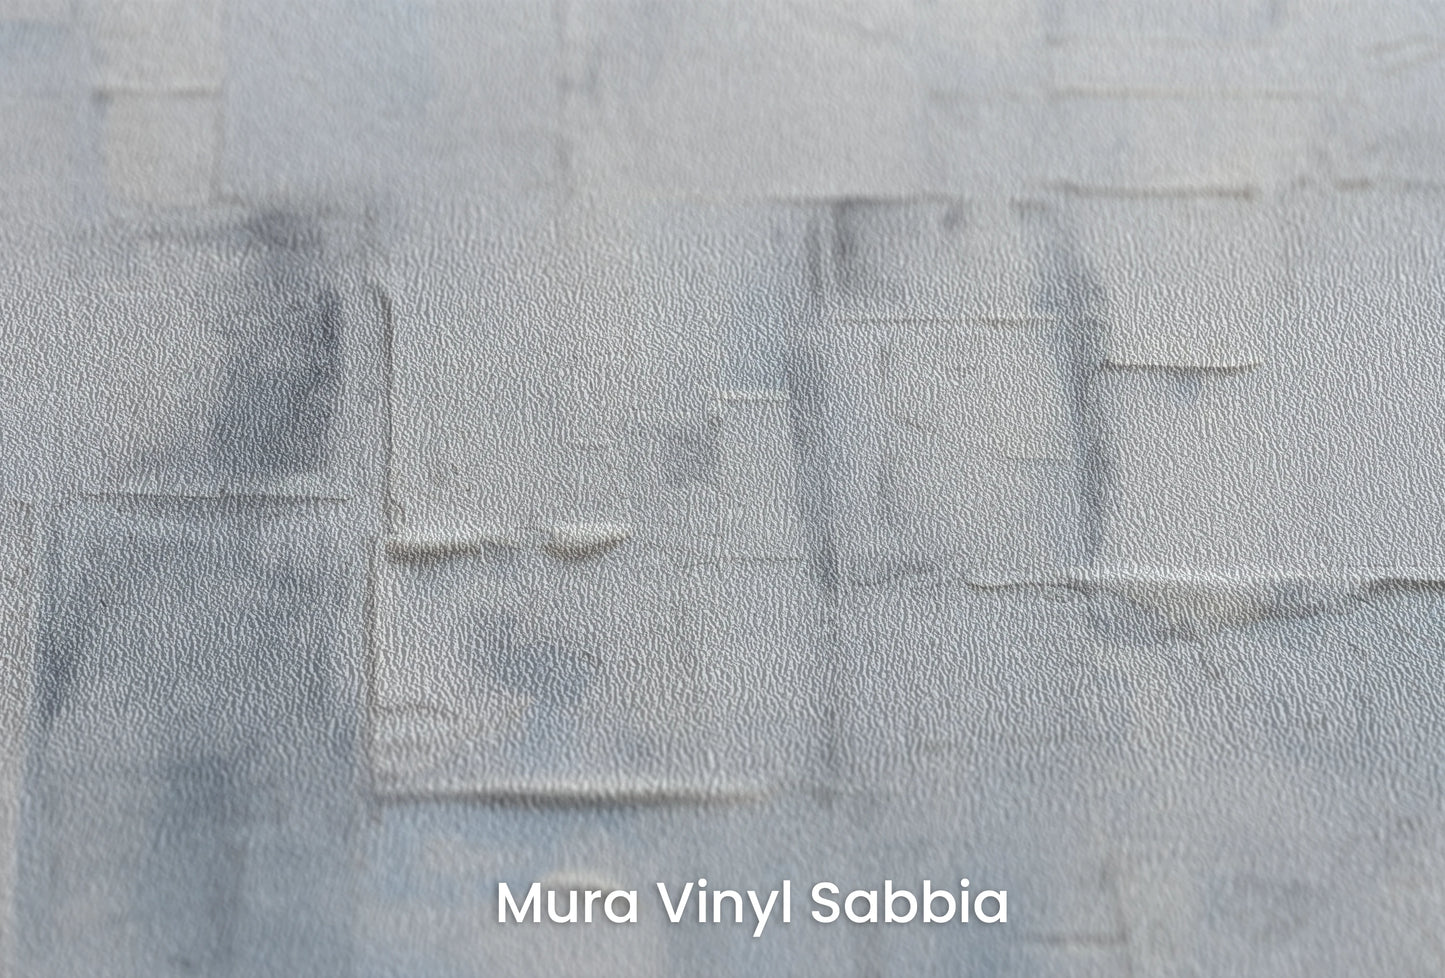 Zbliżenie na artystyczną fototapetę o nazwie Serene Blues na podłożu Mura Vinyl Sabbia struktura grubego ziarna piasku.